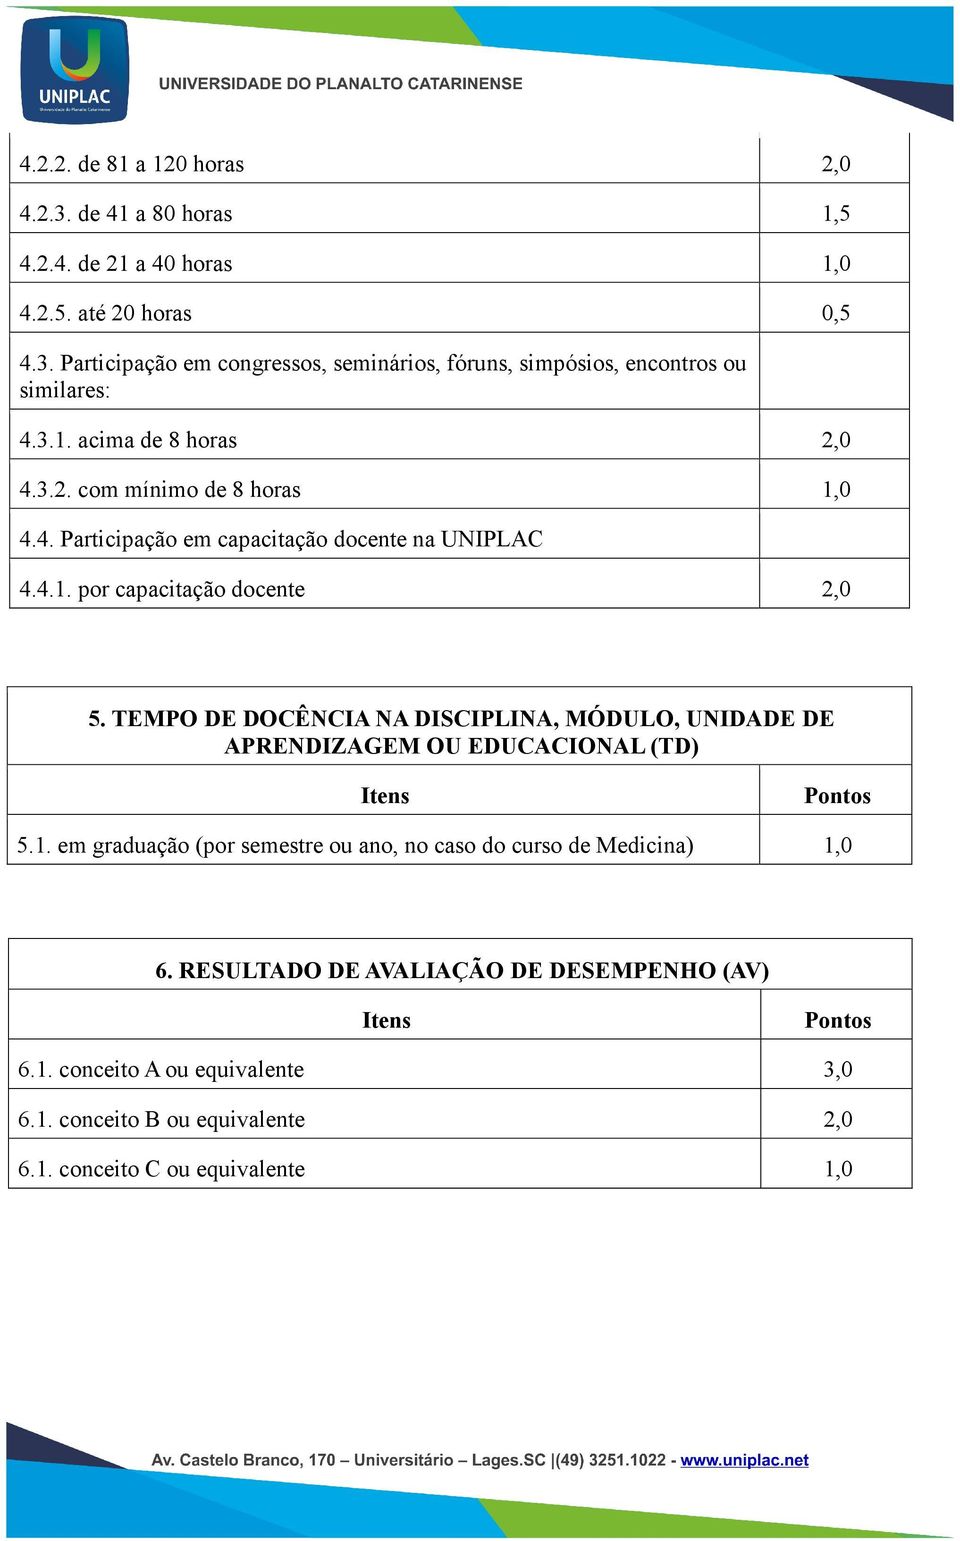 TEMPO DE DOCÊNCIA NA DISCIPLINA, MÓDULO, UNIDADE DE APRENDIZAGEM OU EDUCACIONAL (TD) Pontos 5.1. em graduação (por semestre ou ano, no caso do curso de Medicina) 1,0 6.